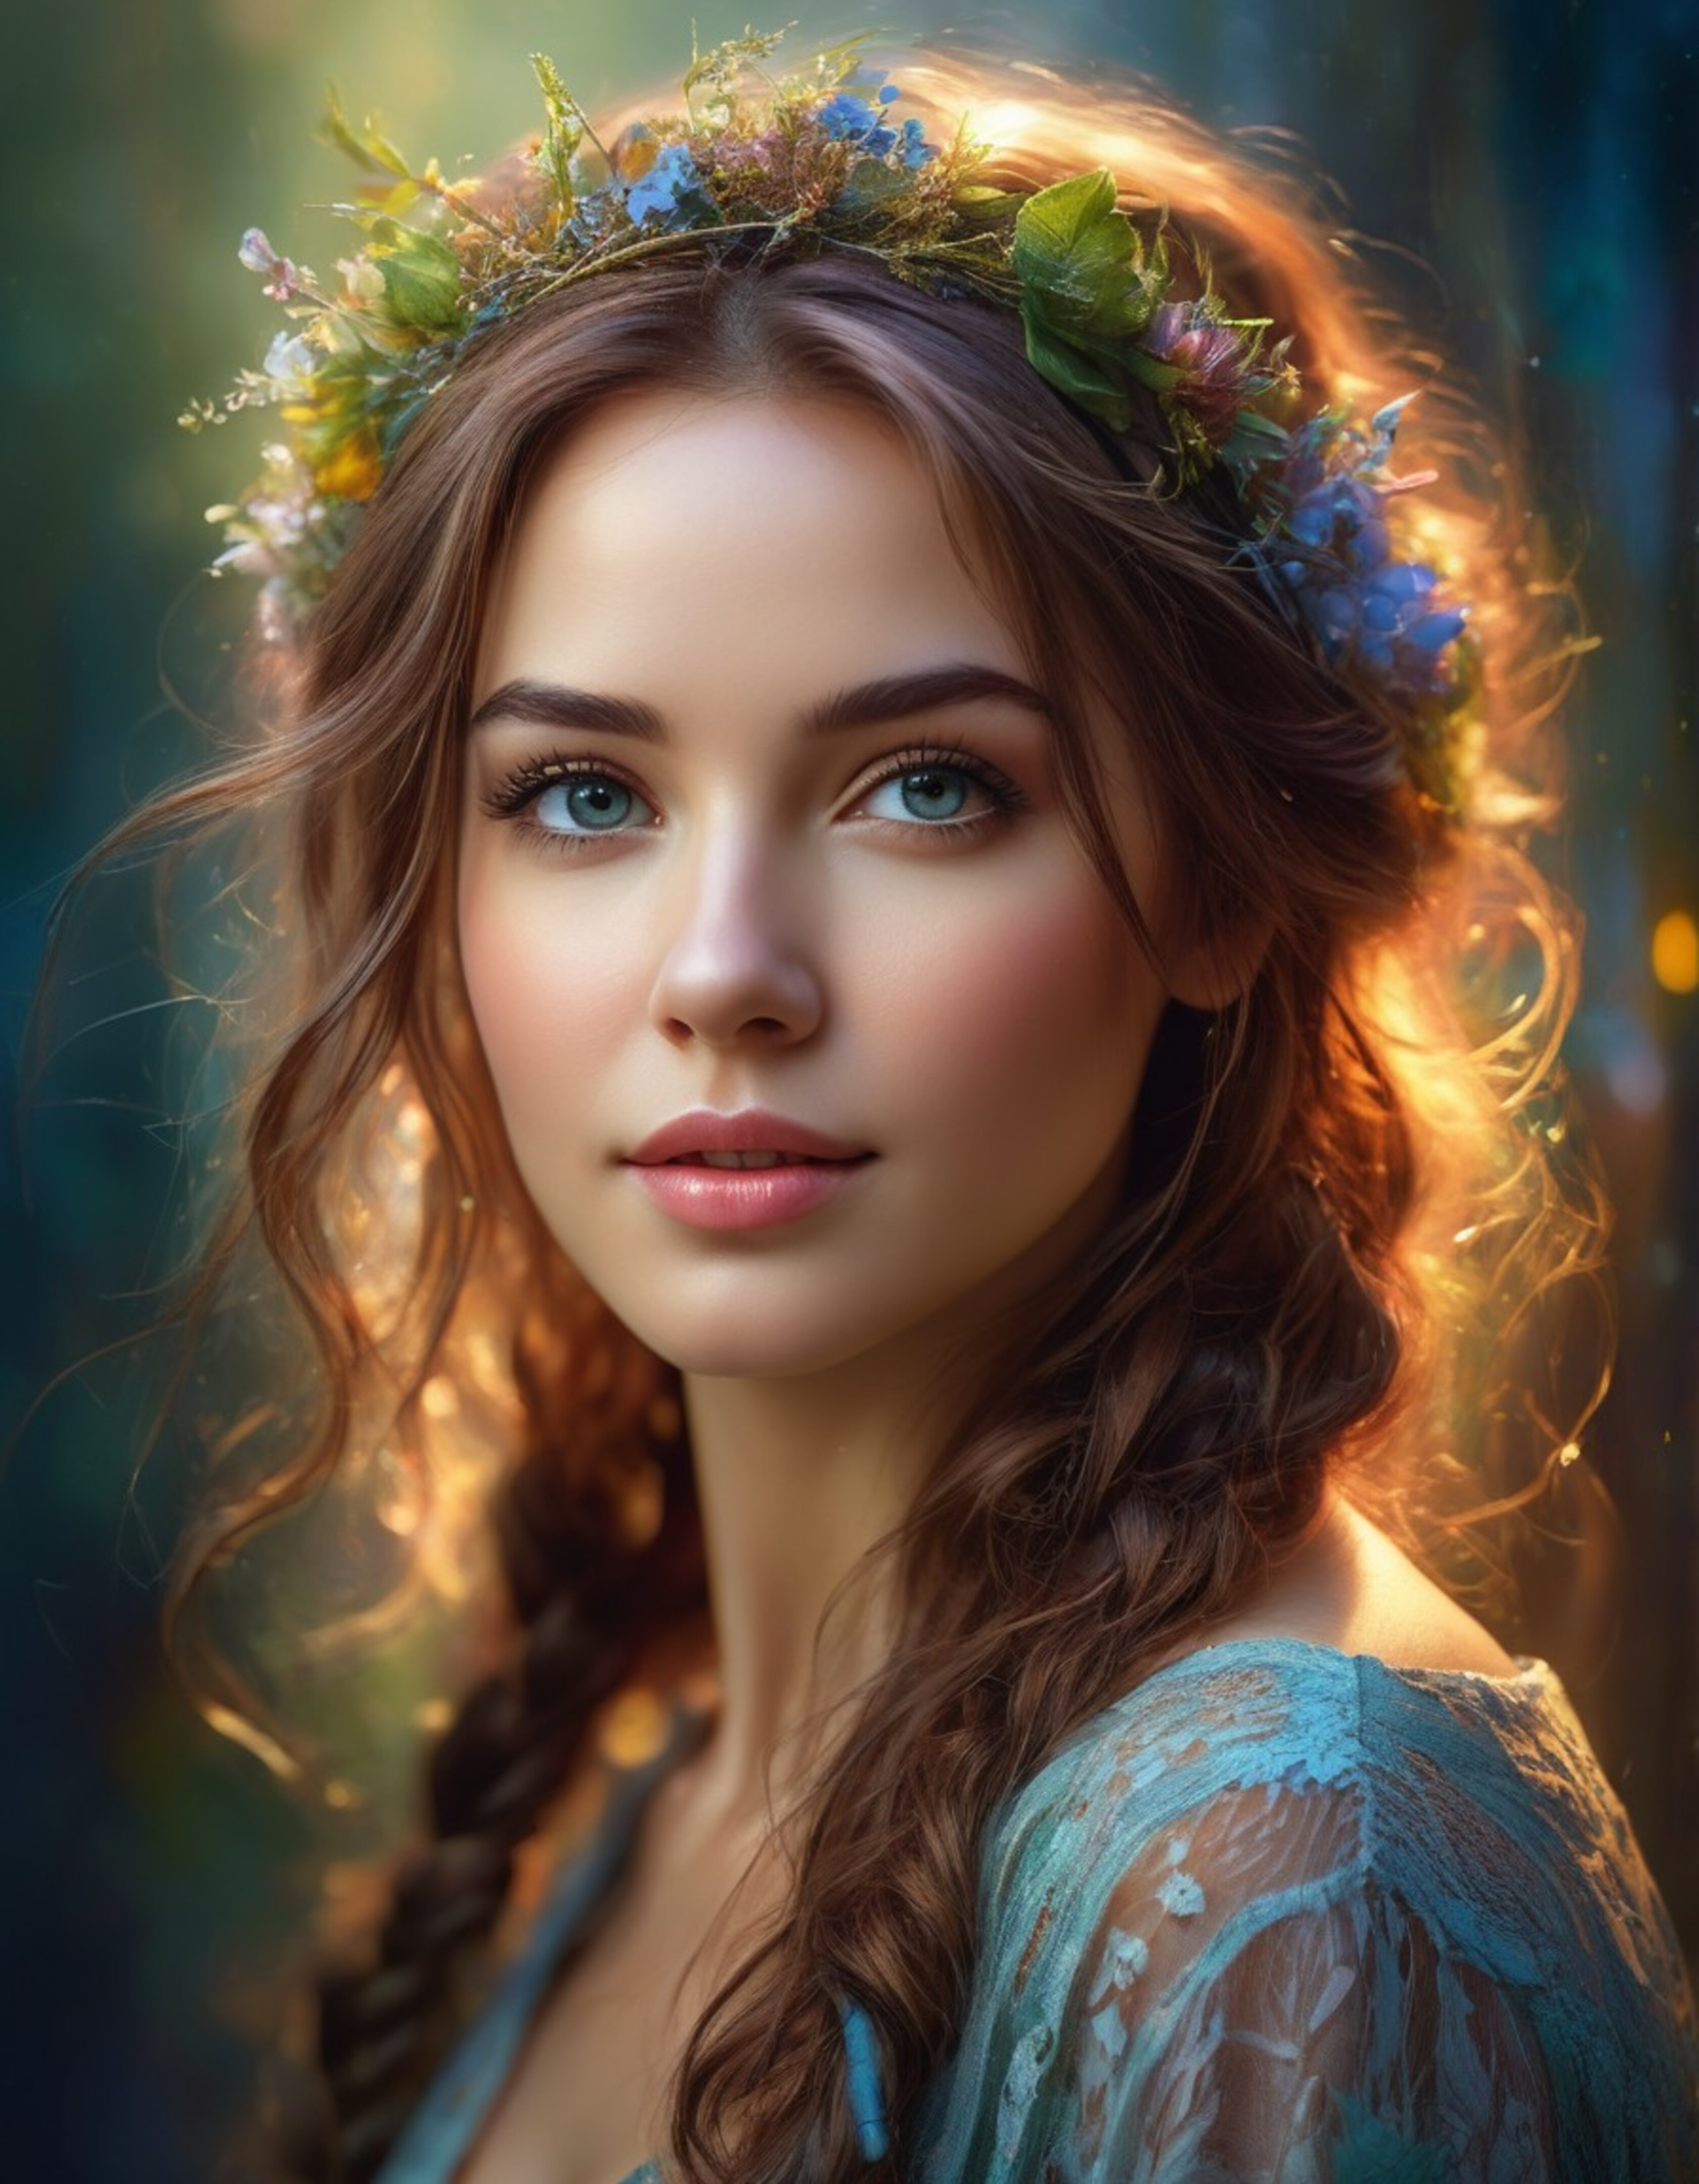 Бесплатное фото Портрет девушки с цветами в волосах